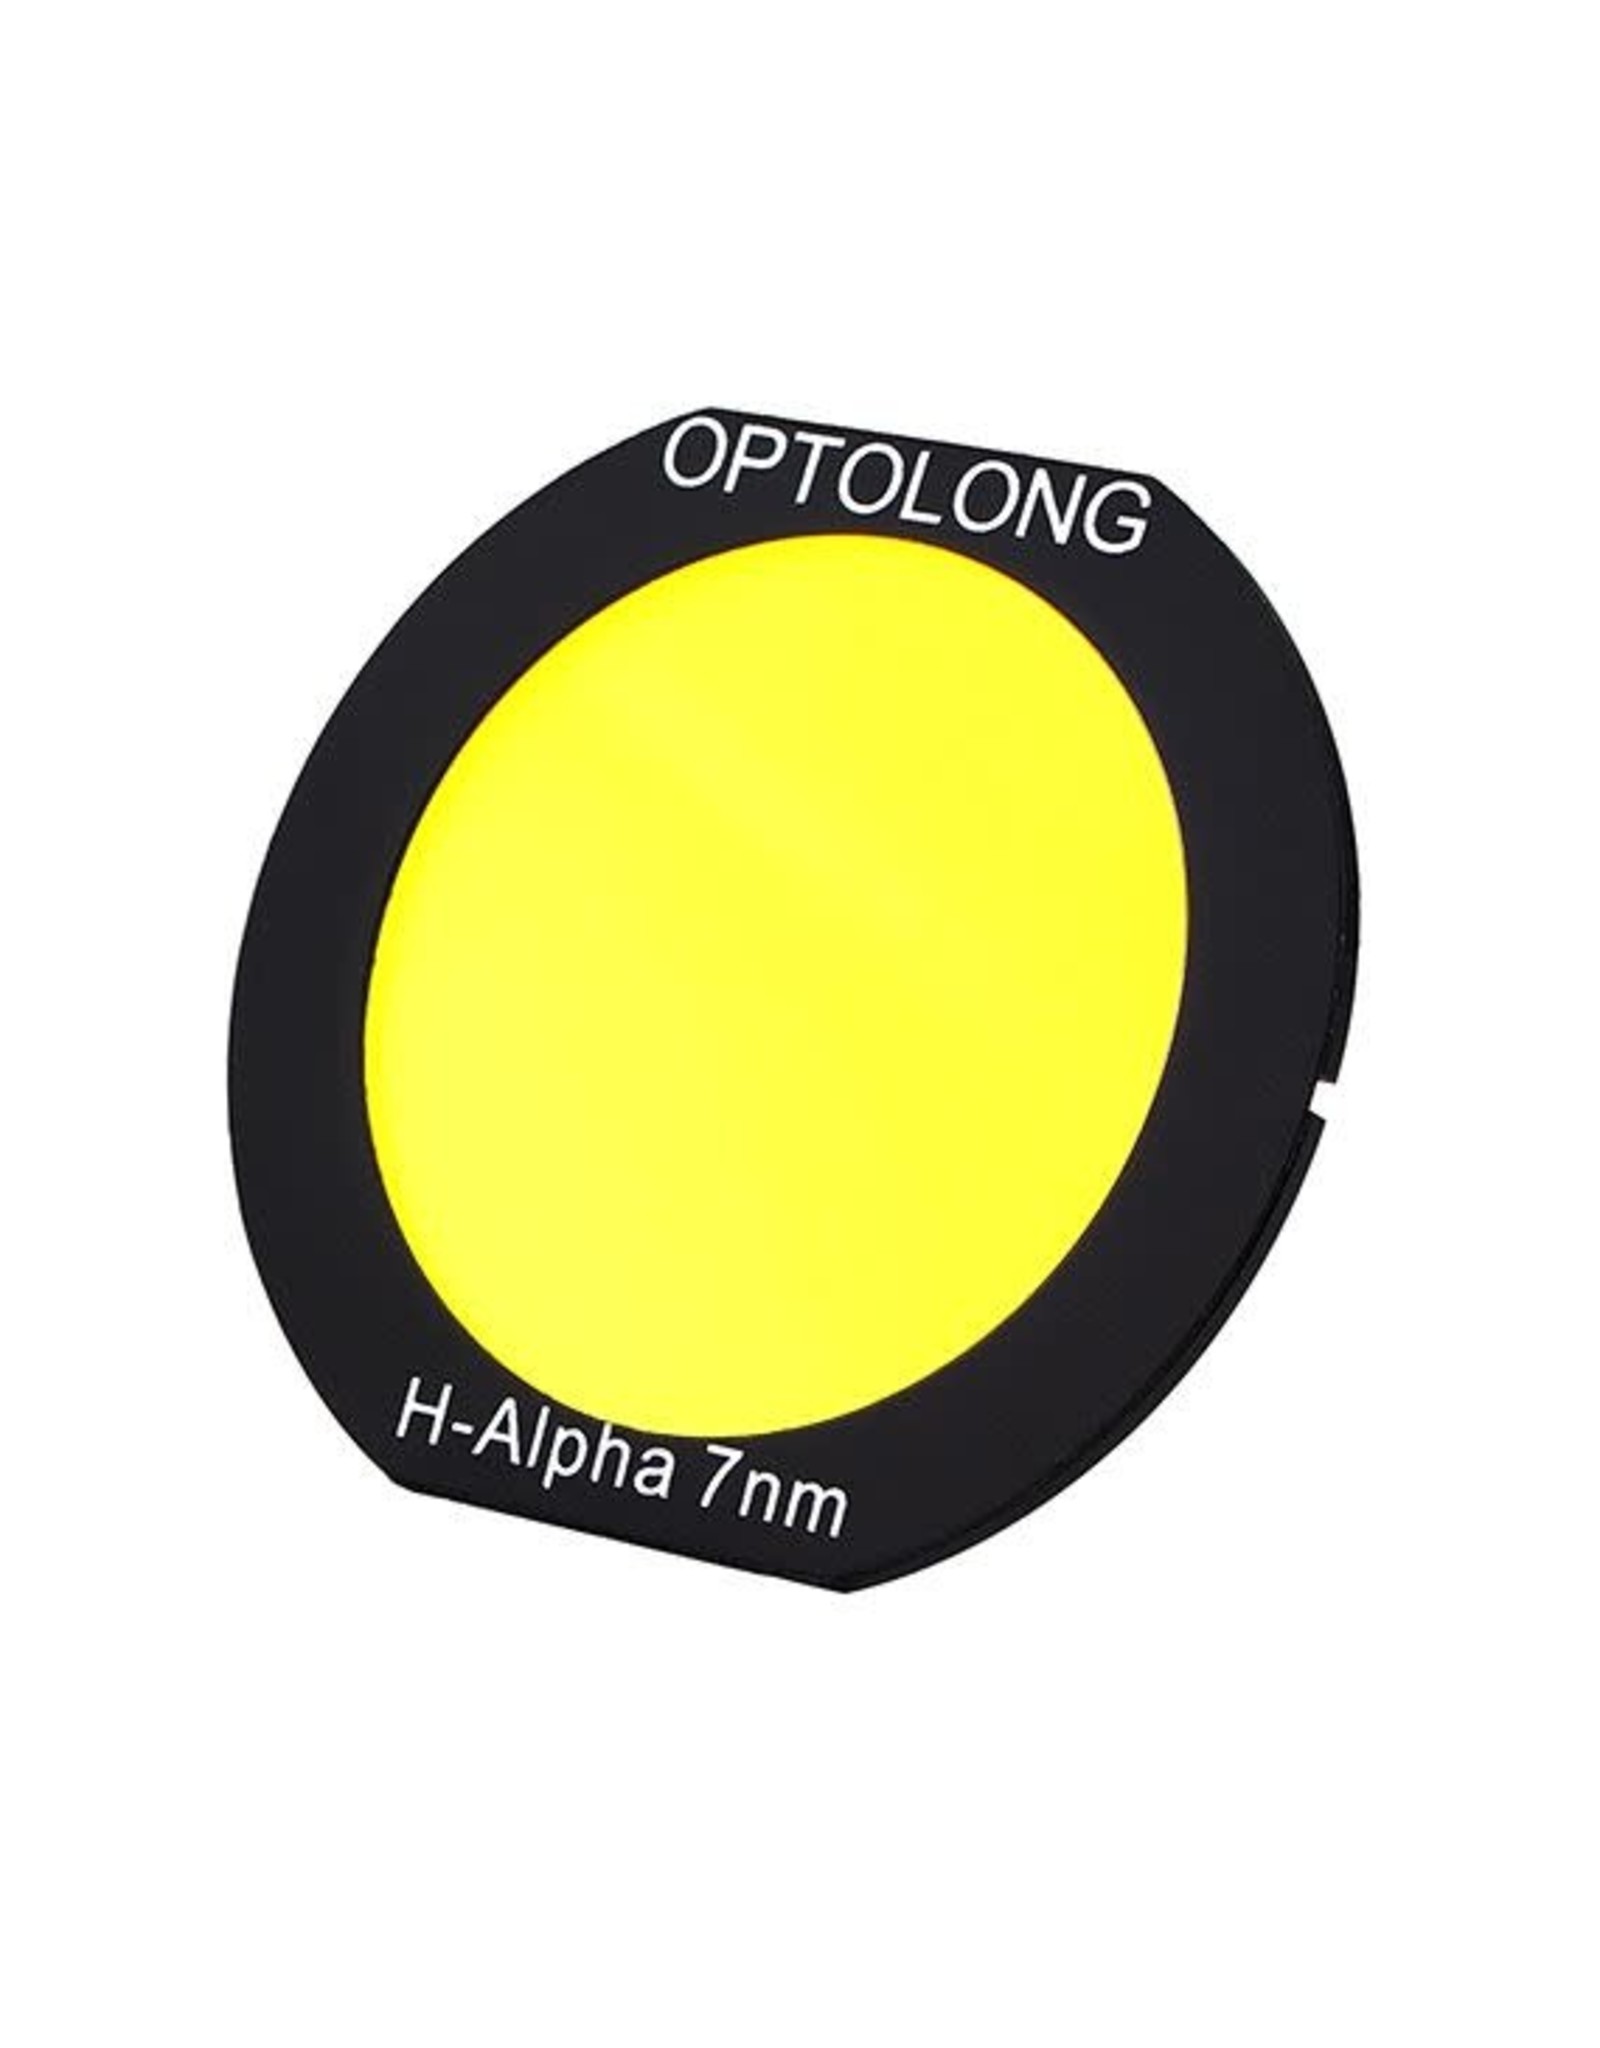 Optolong Optolong H Alpha 7nm EOS Clip Filter #11305